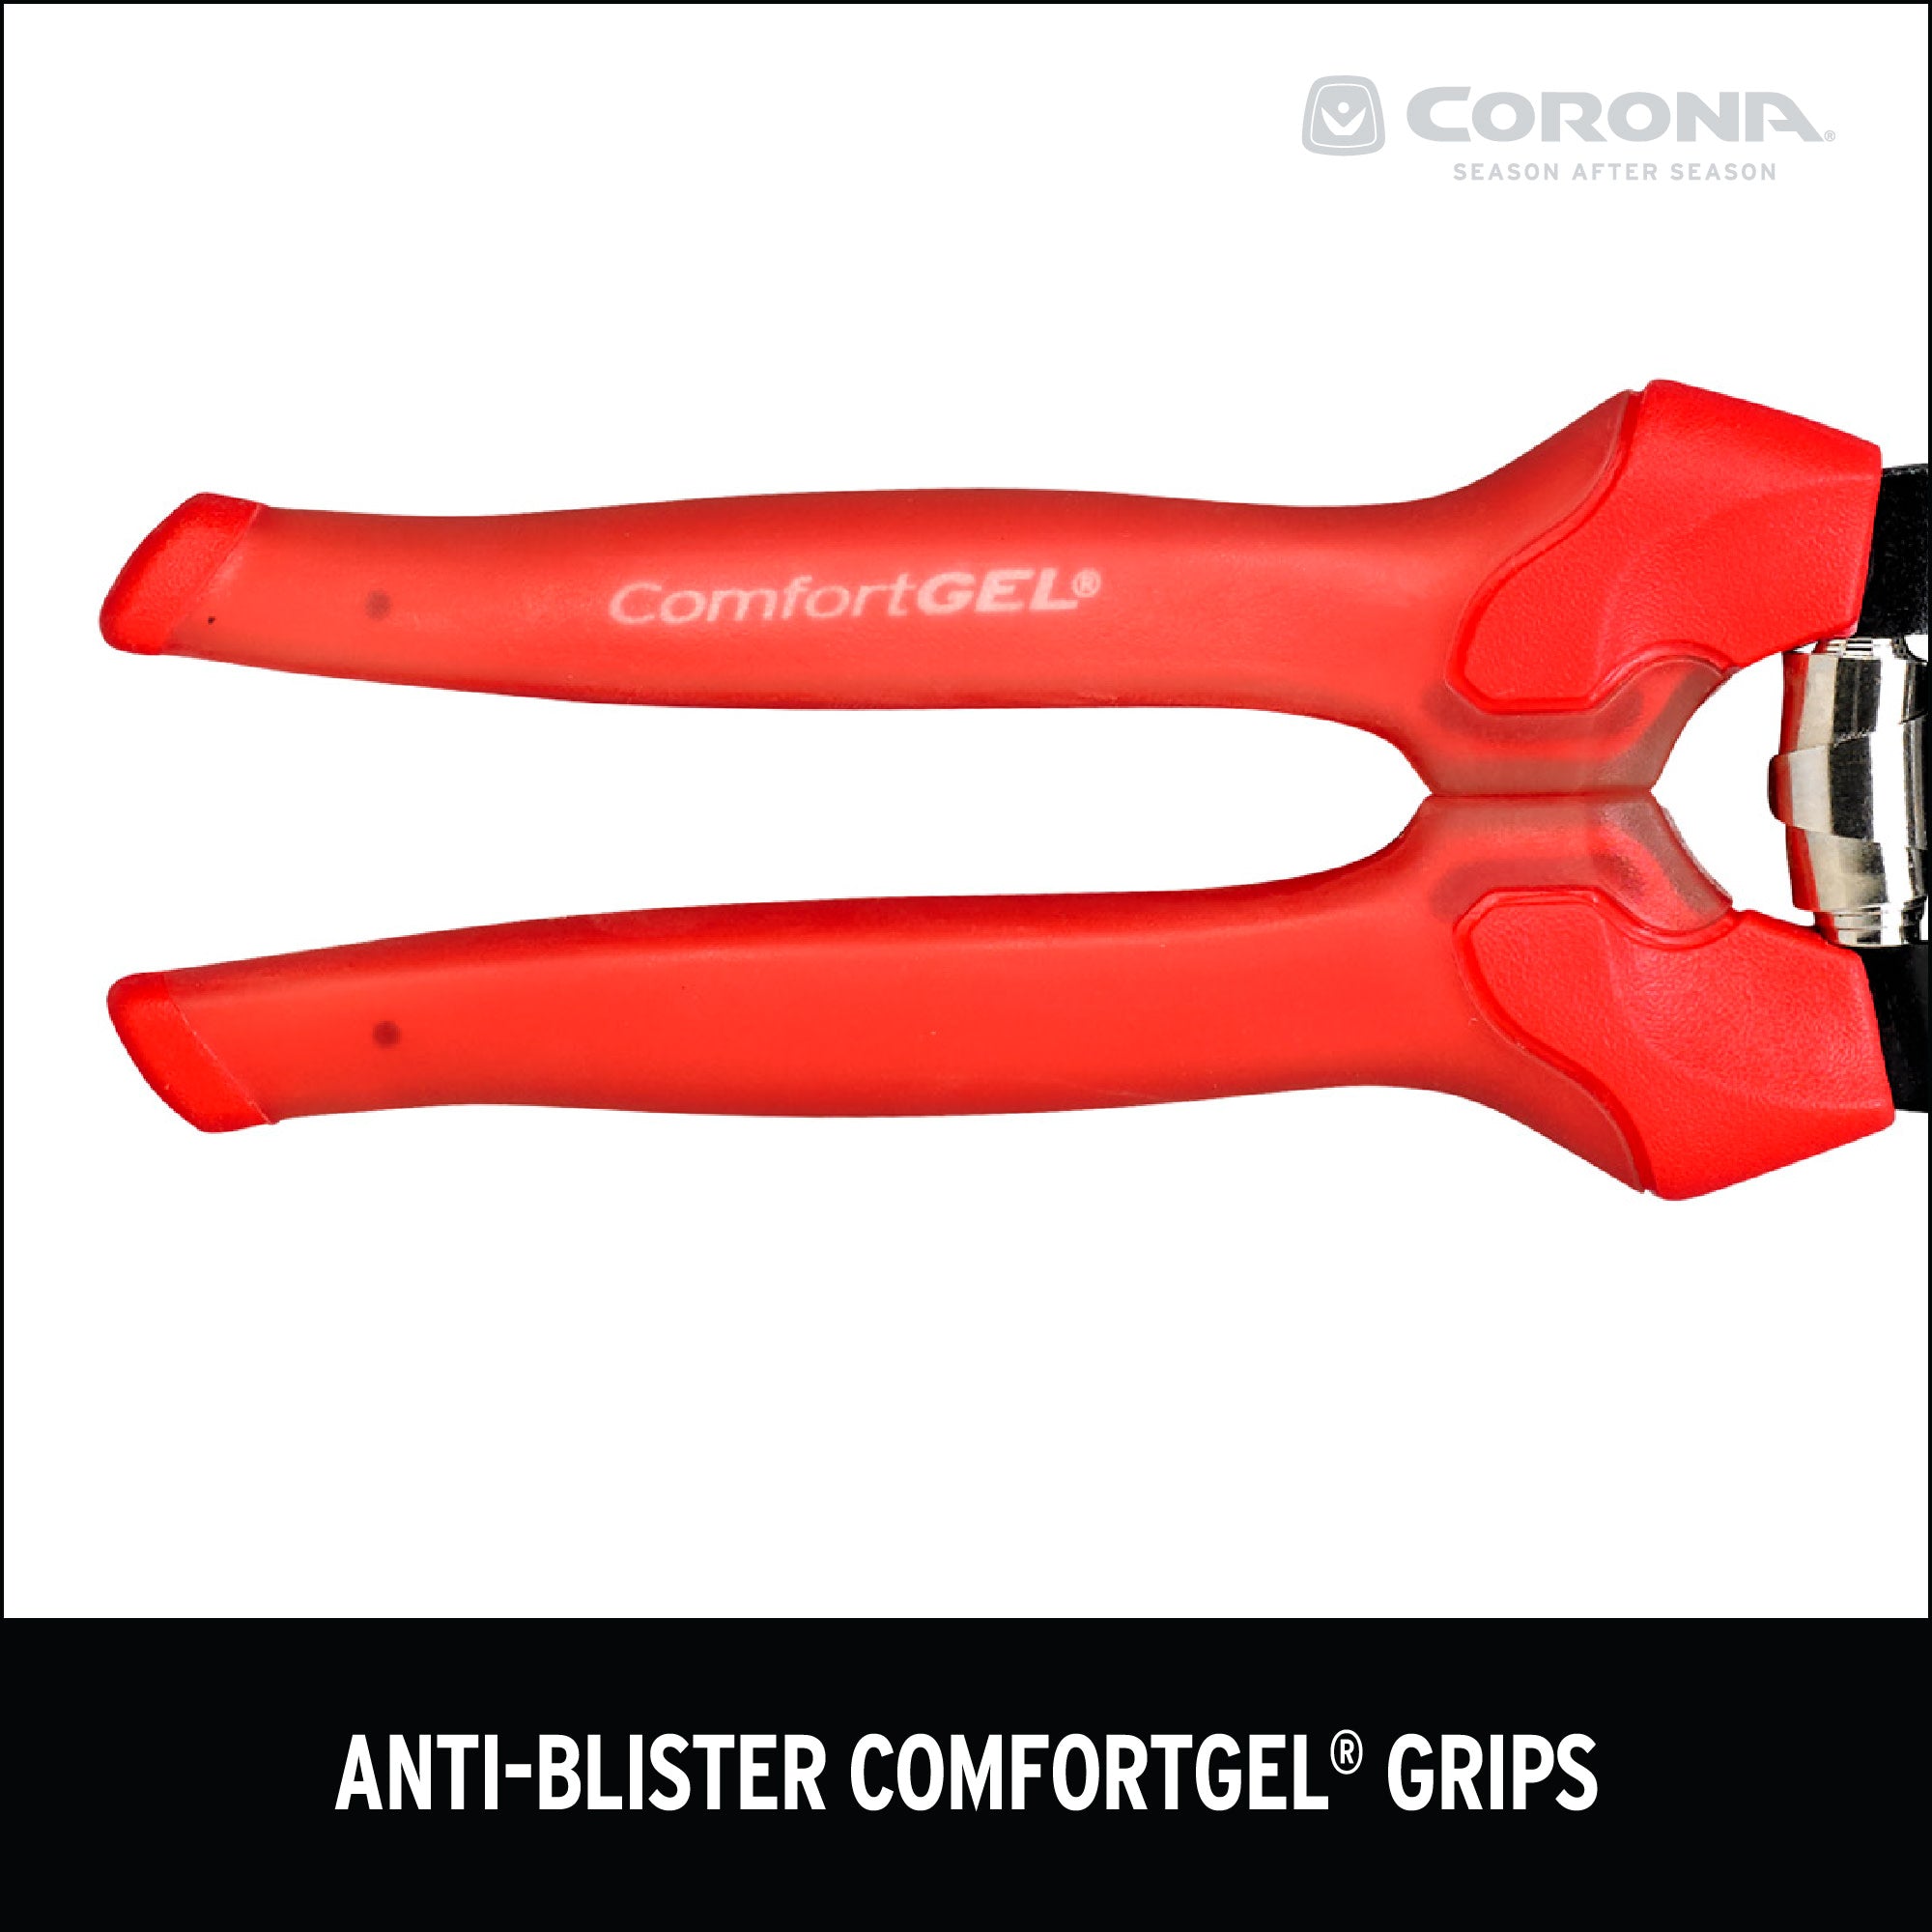 ComfortGEL® Anvil Pruner, 3/4 in. Cut Capacity